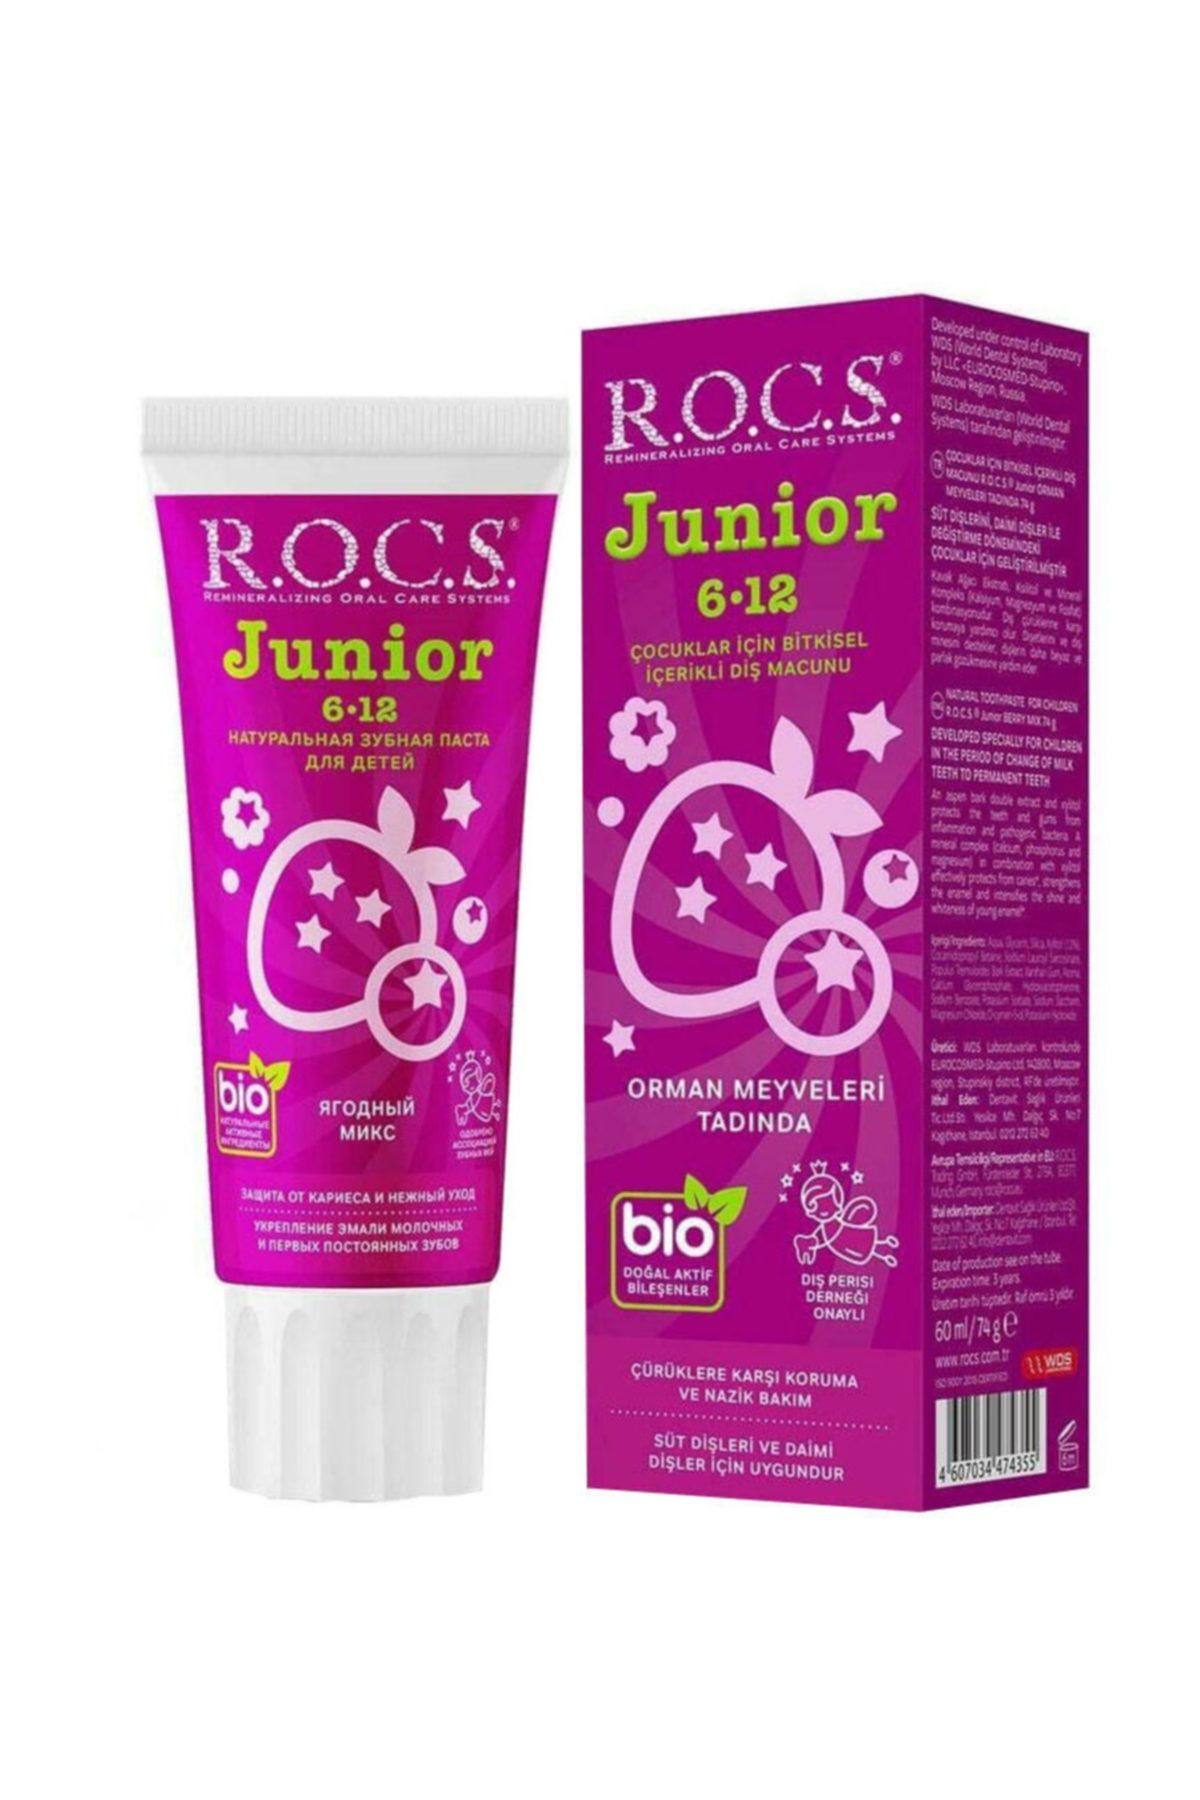 Rocs Junior 6-12 Orman Meyveli Özlü Diş Macunu 74 gr